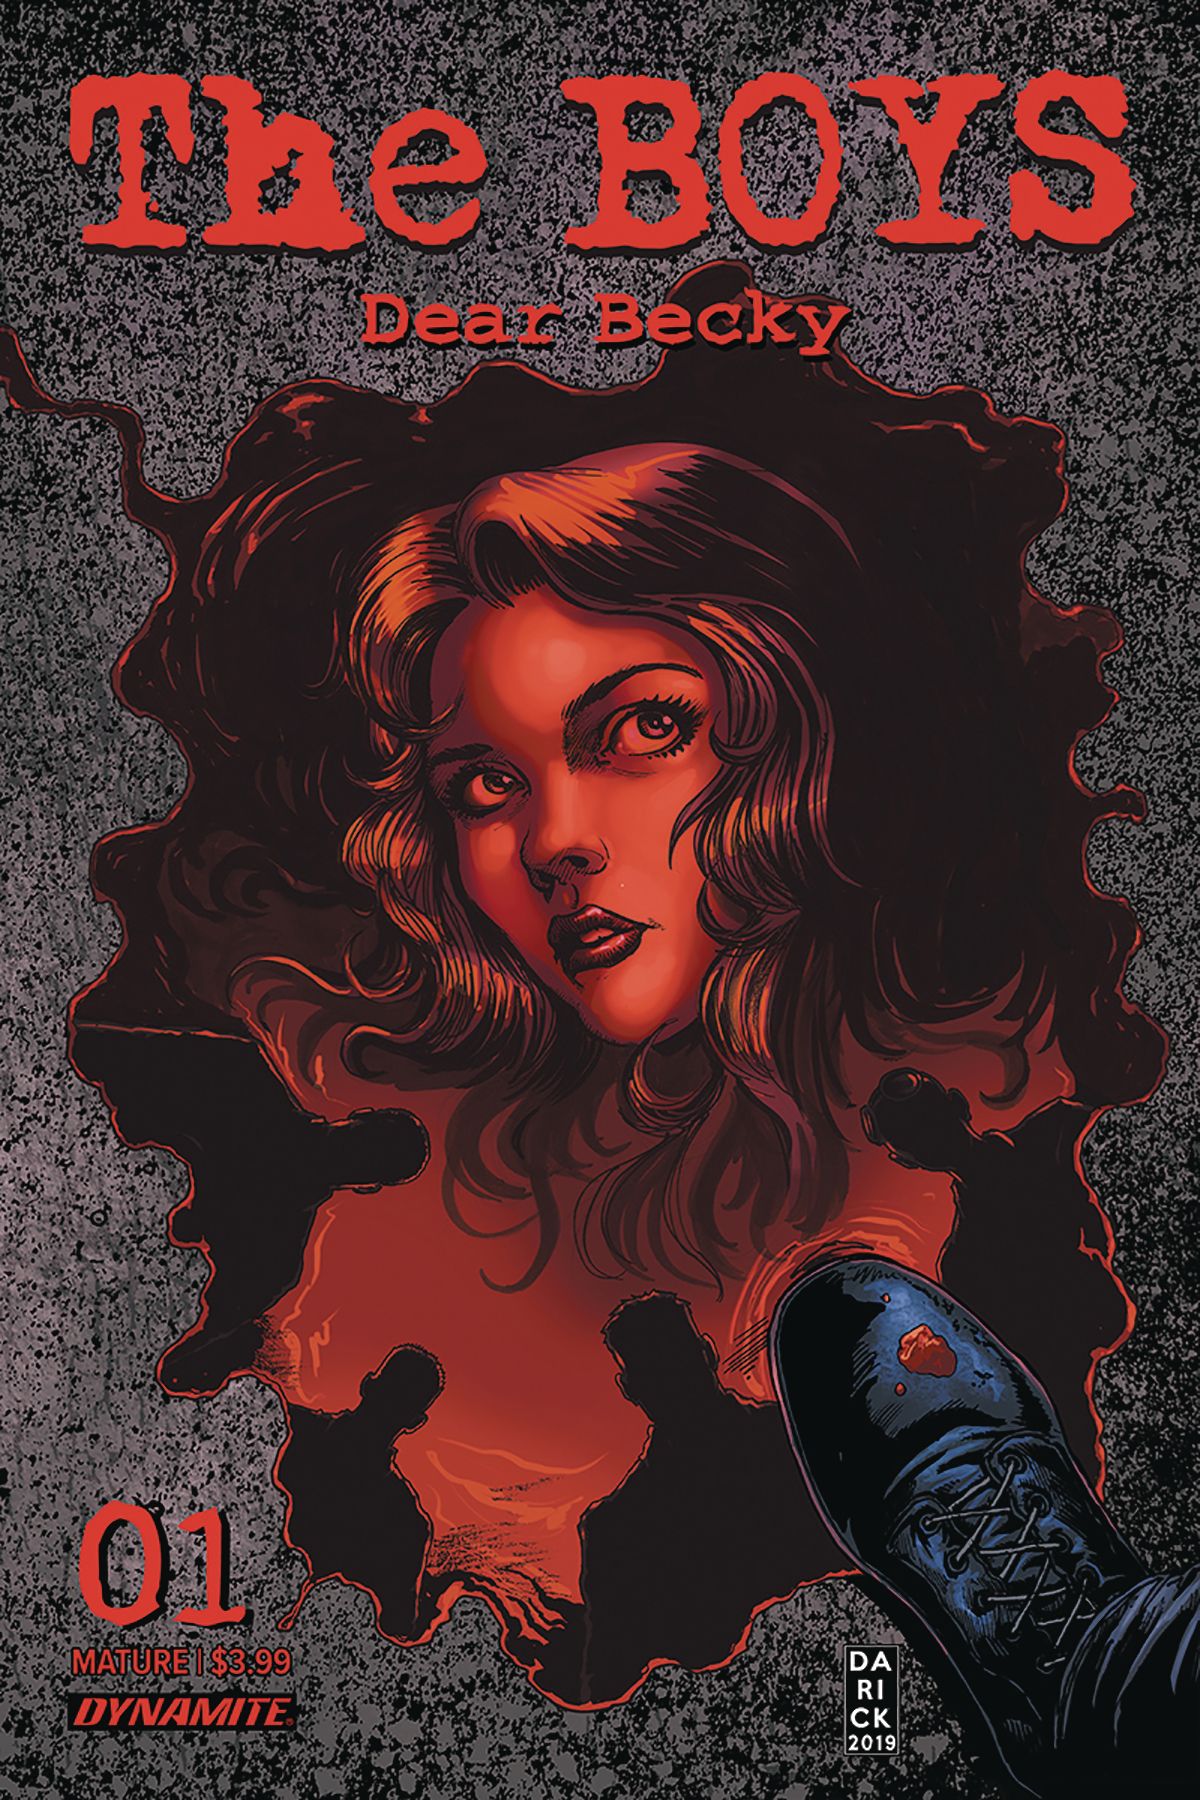 The Boys: Dear Becky #1 Comic